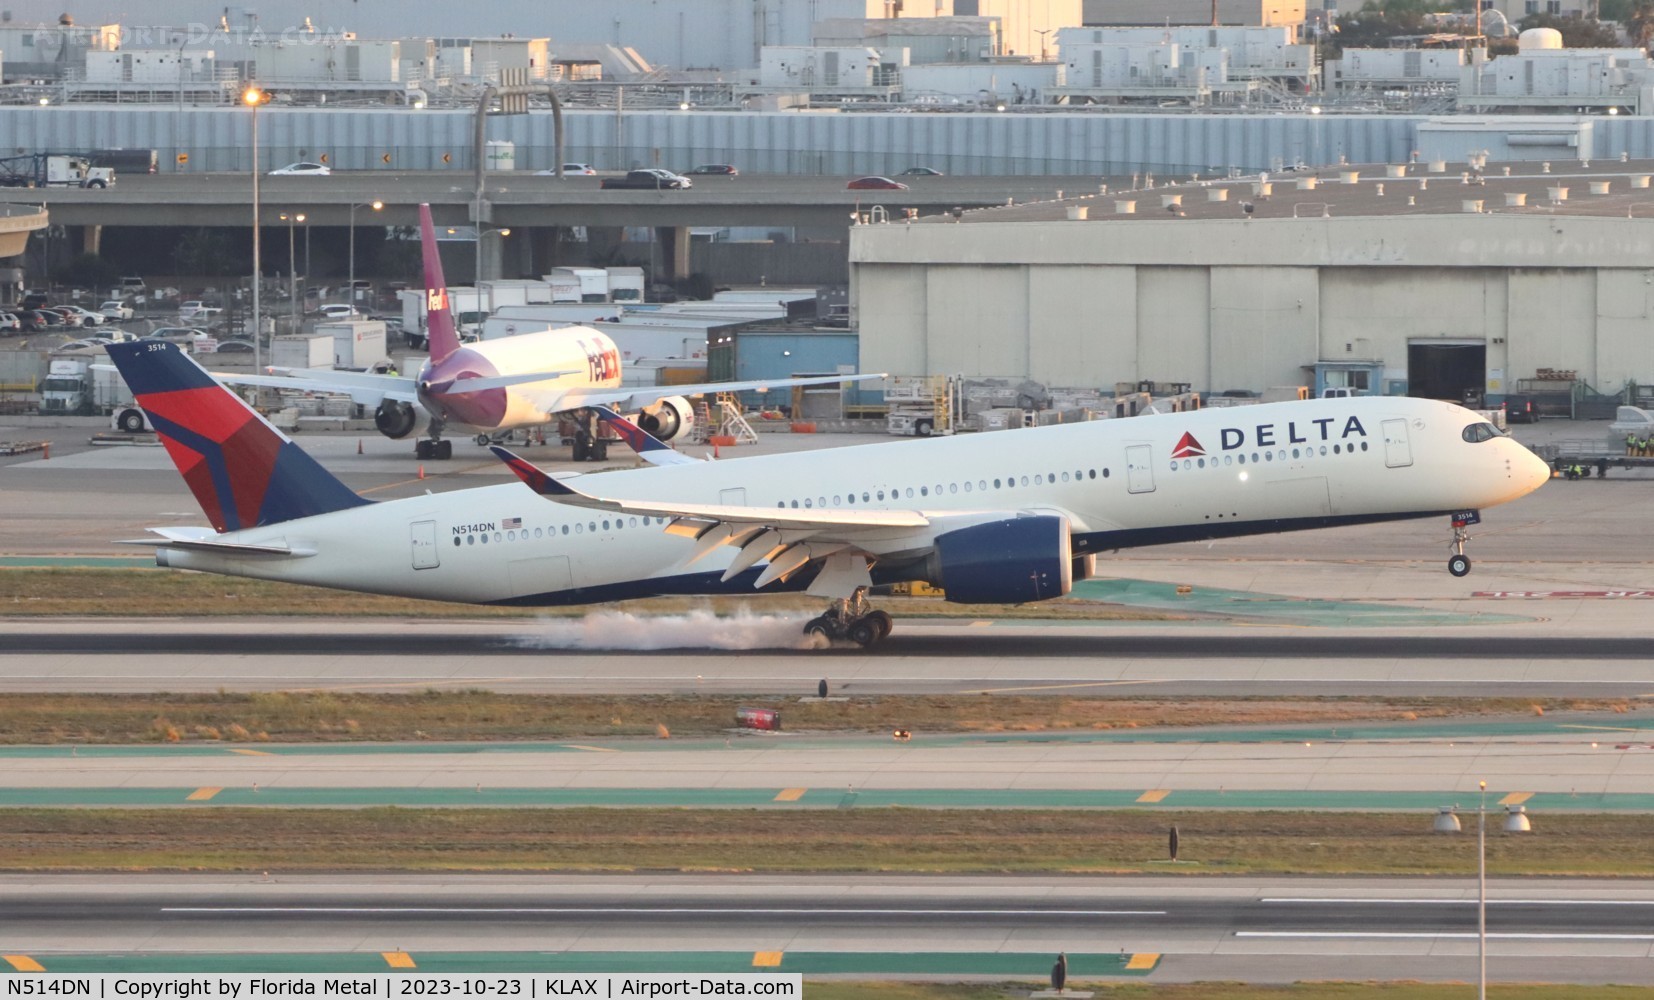 N514DN, 2019 Airbus A350-941 C/N 395, DAL A359 zx ATL-LAX